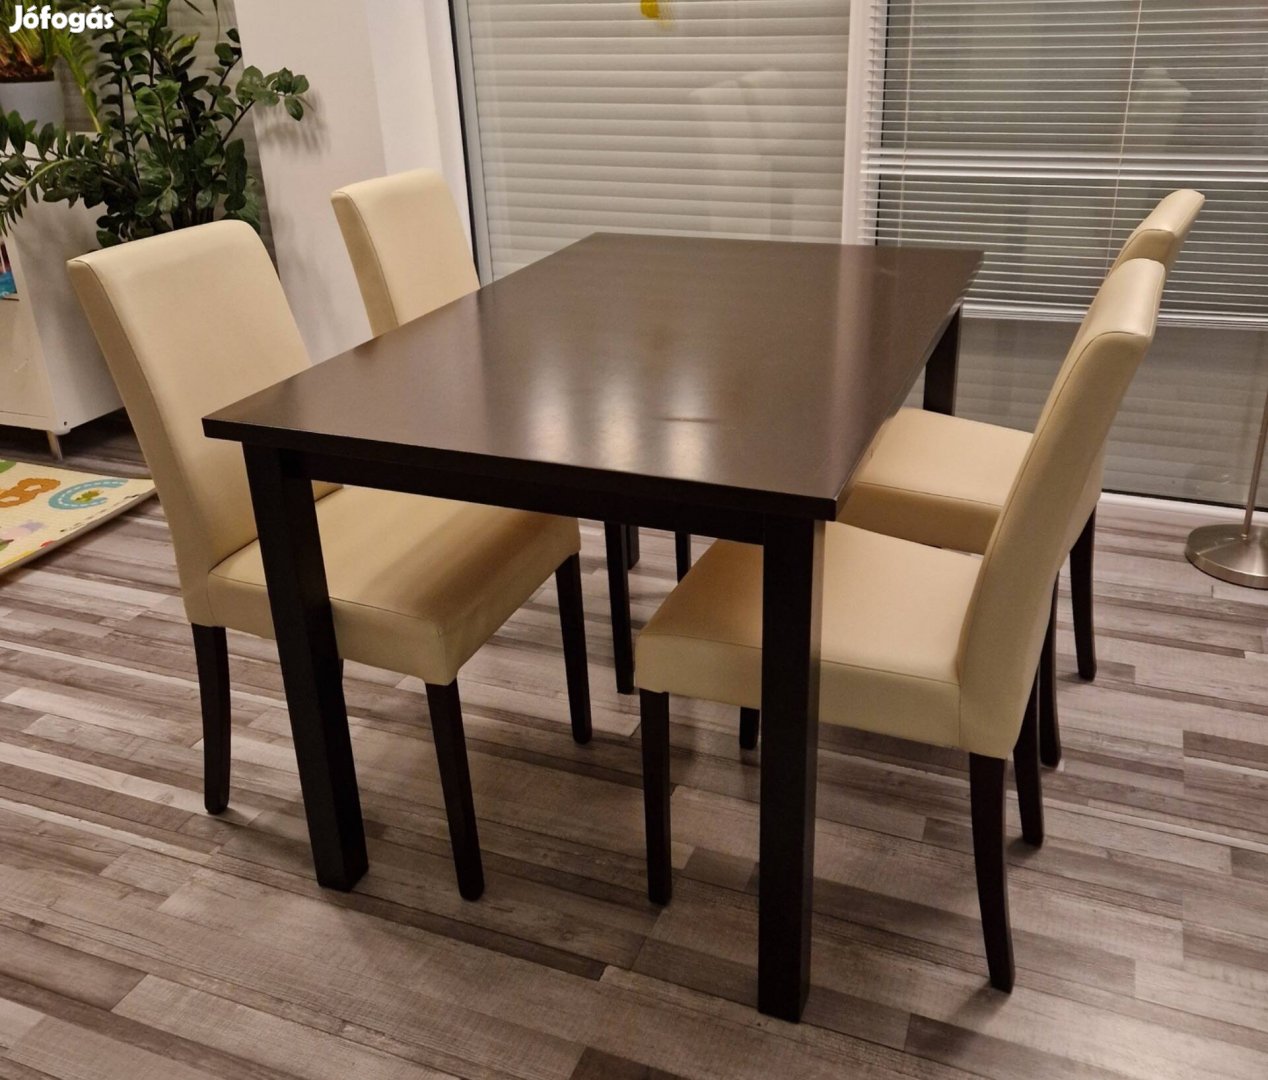 Ebédlőasztal + székek